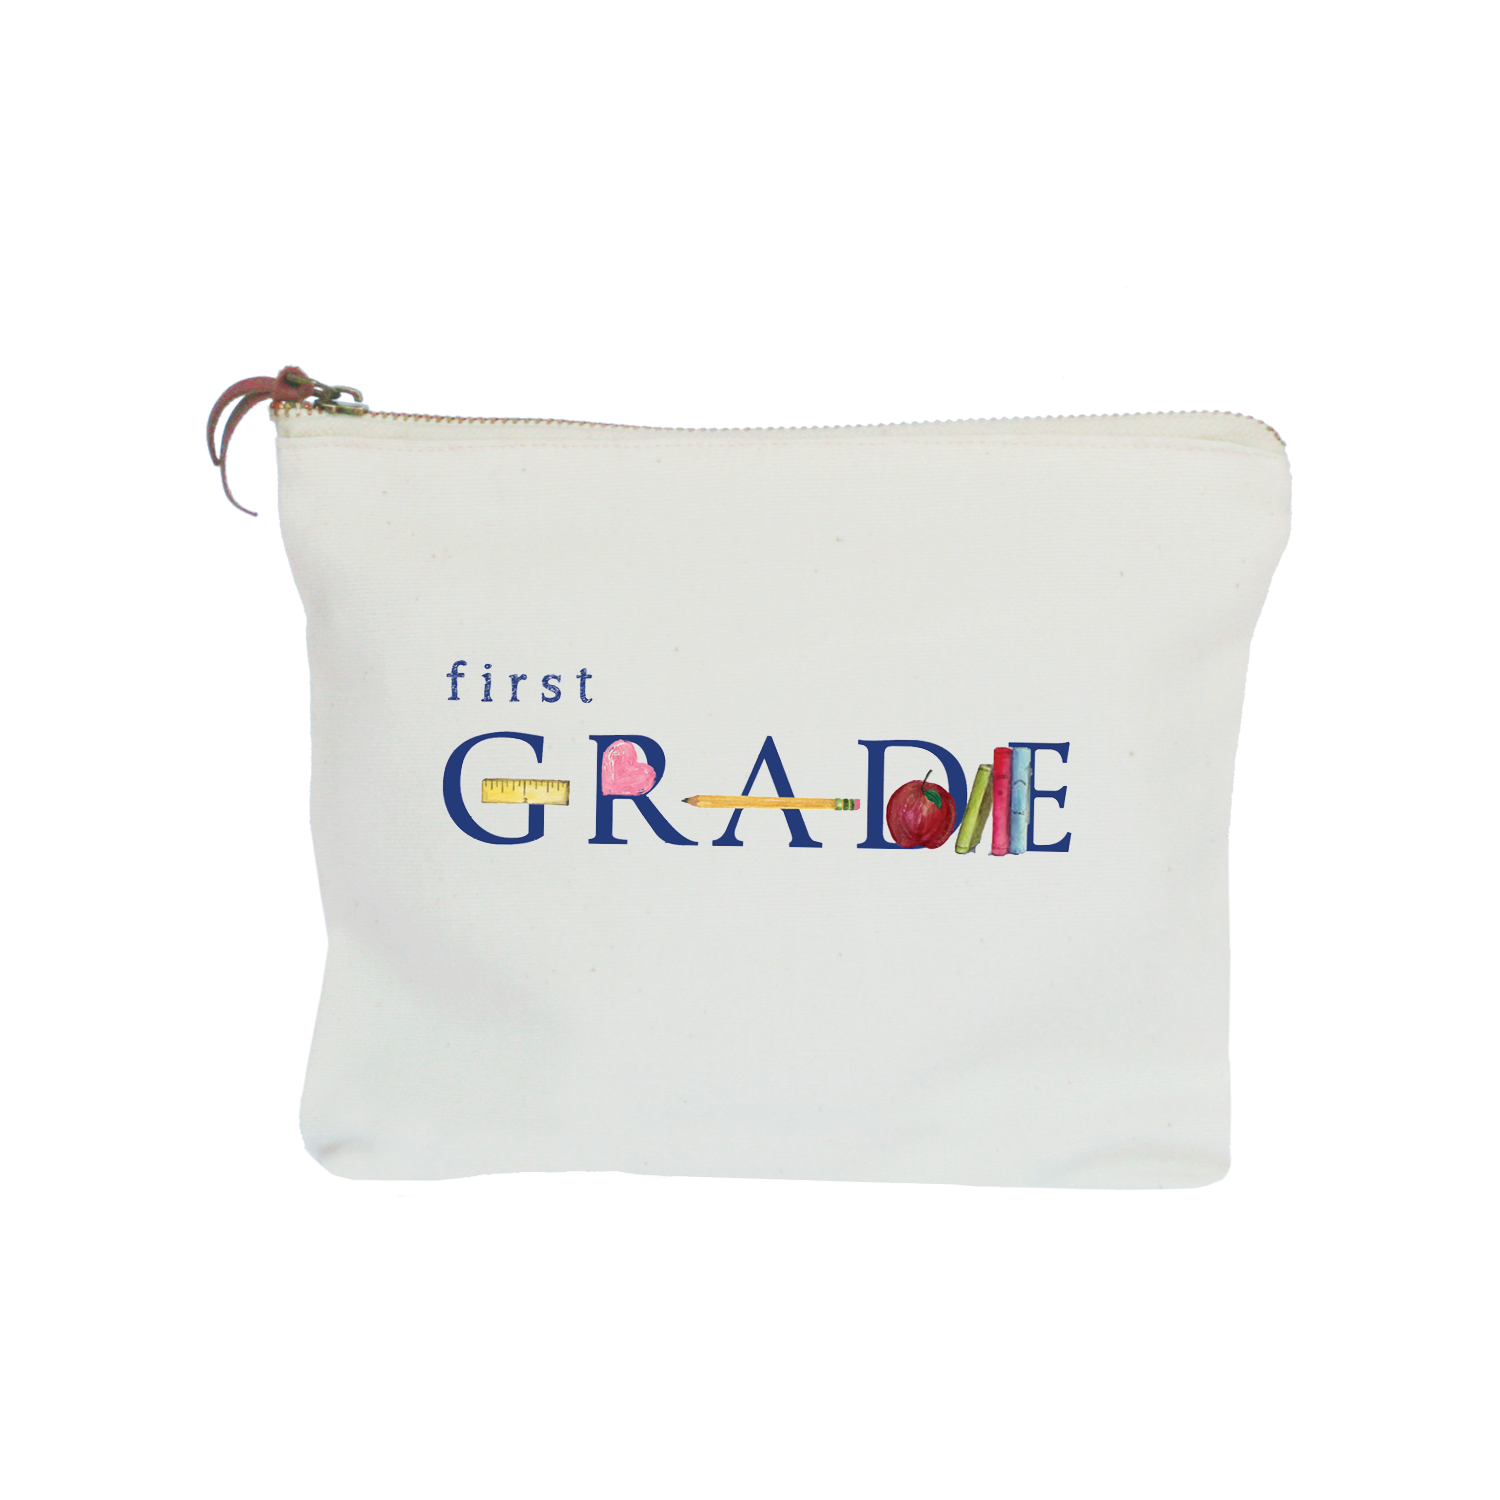 first grade zipper pouch